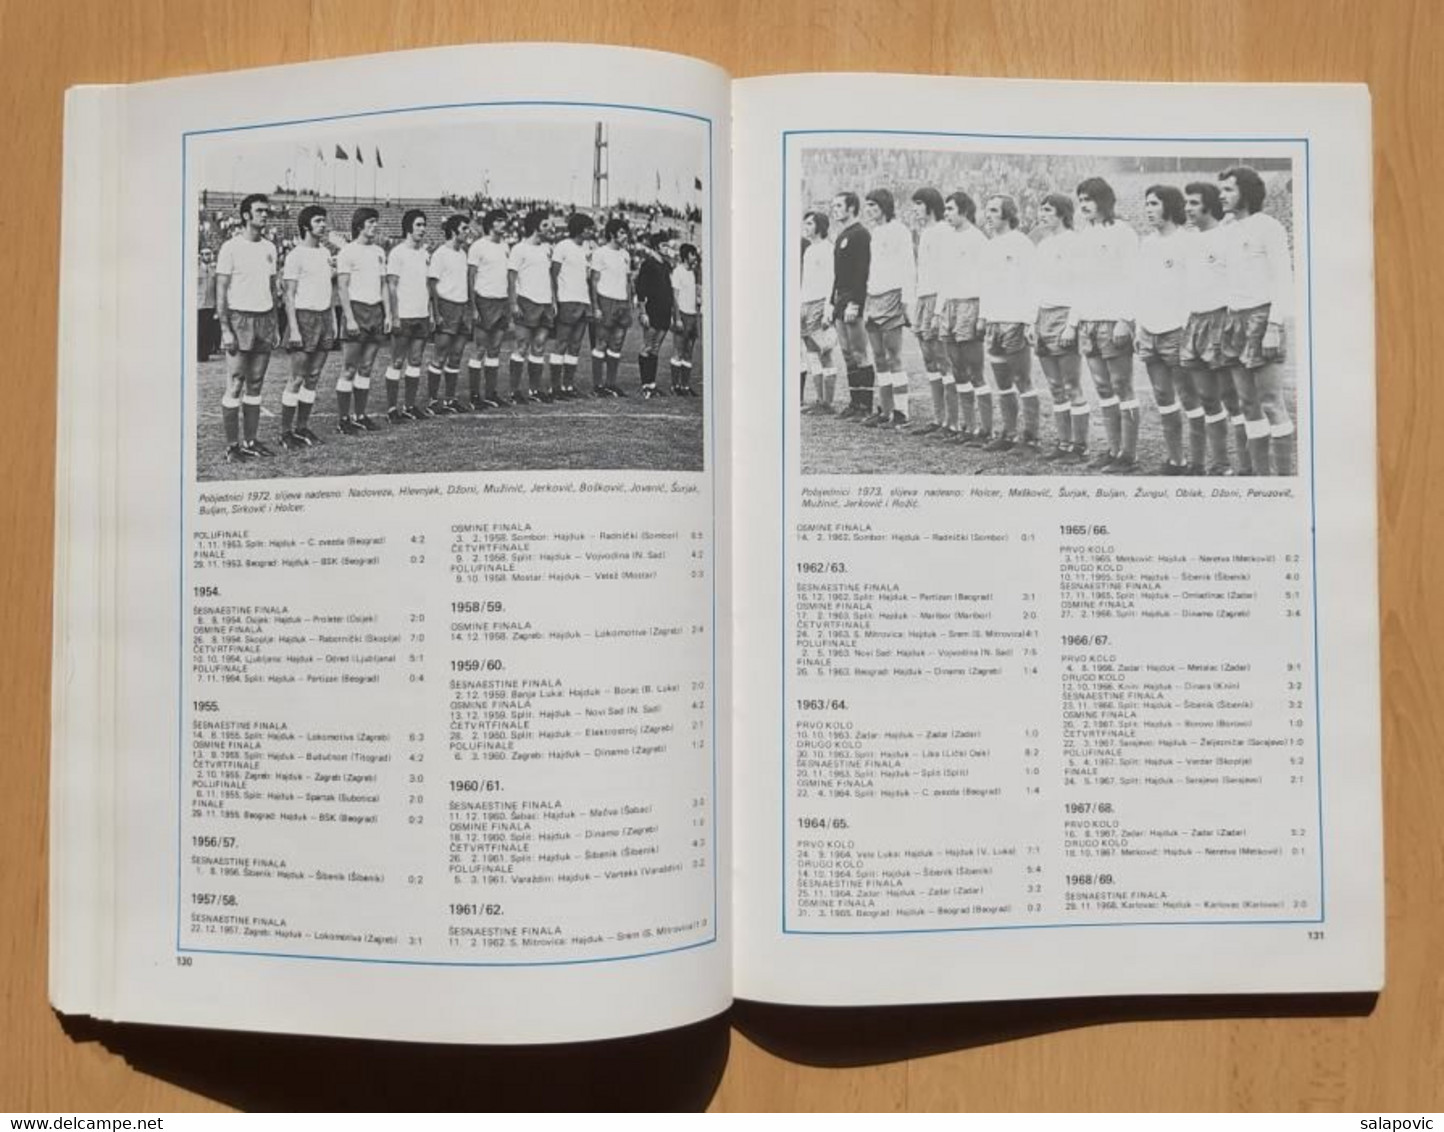 Hajduk Split 1911-1977 Srećko Eterović  monografija football club Croatia, monograph